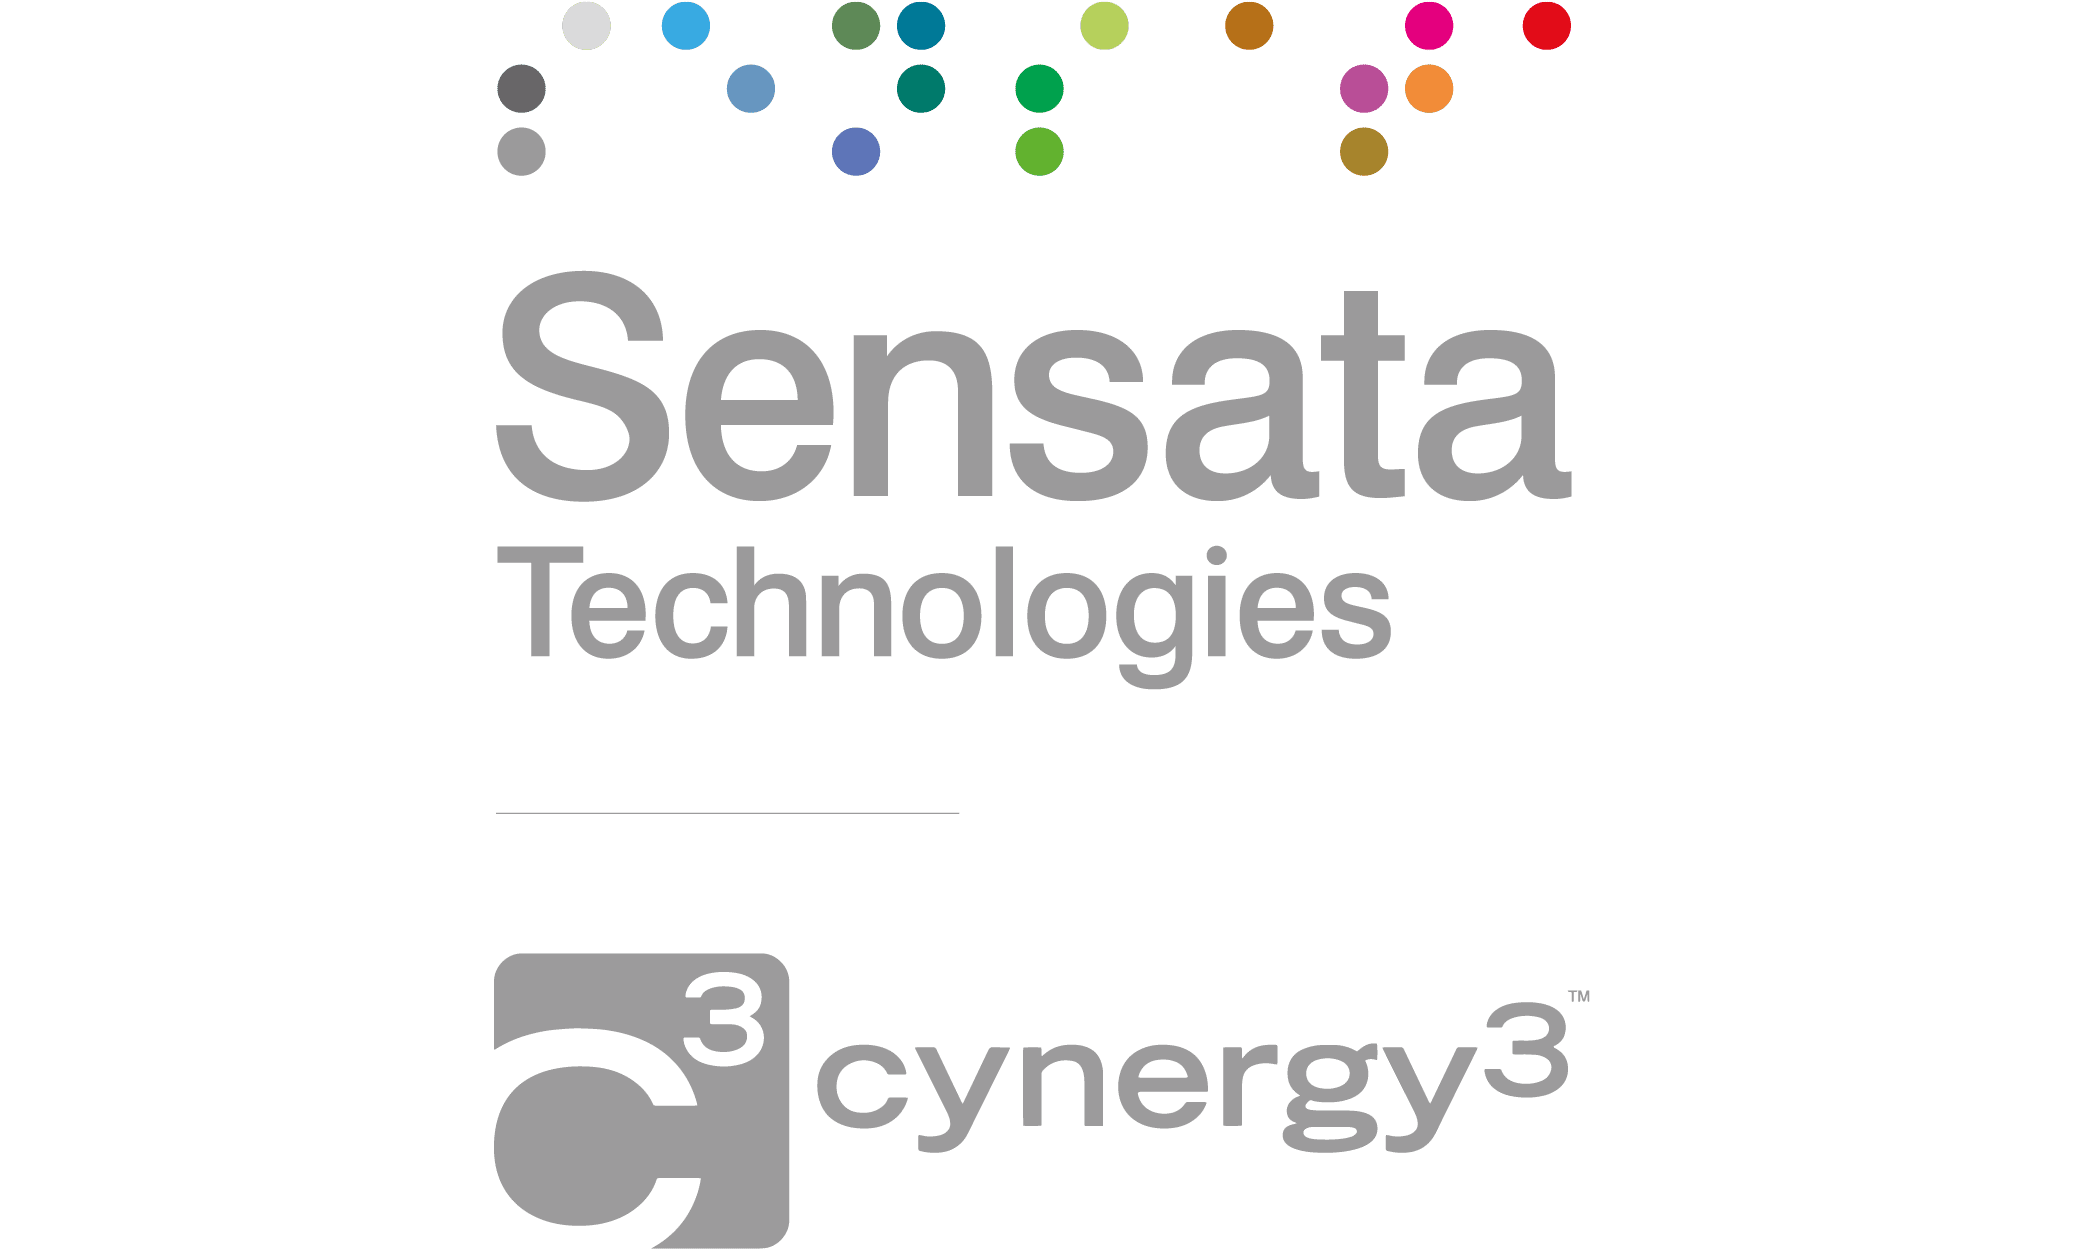 Sensata Technologies / Cynergy3 Firmenogo 1000 px von 600 px